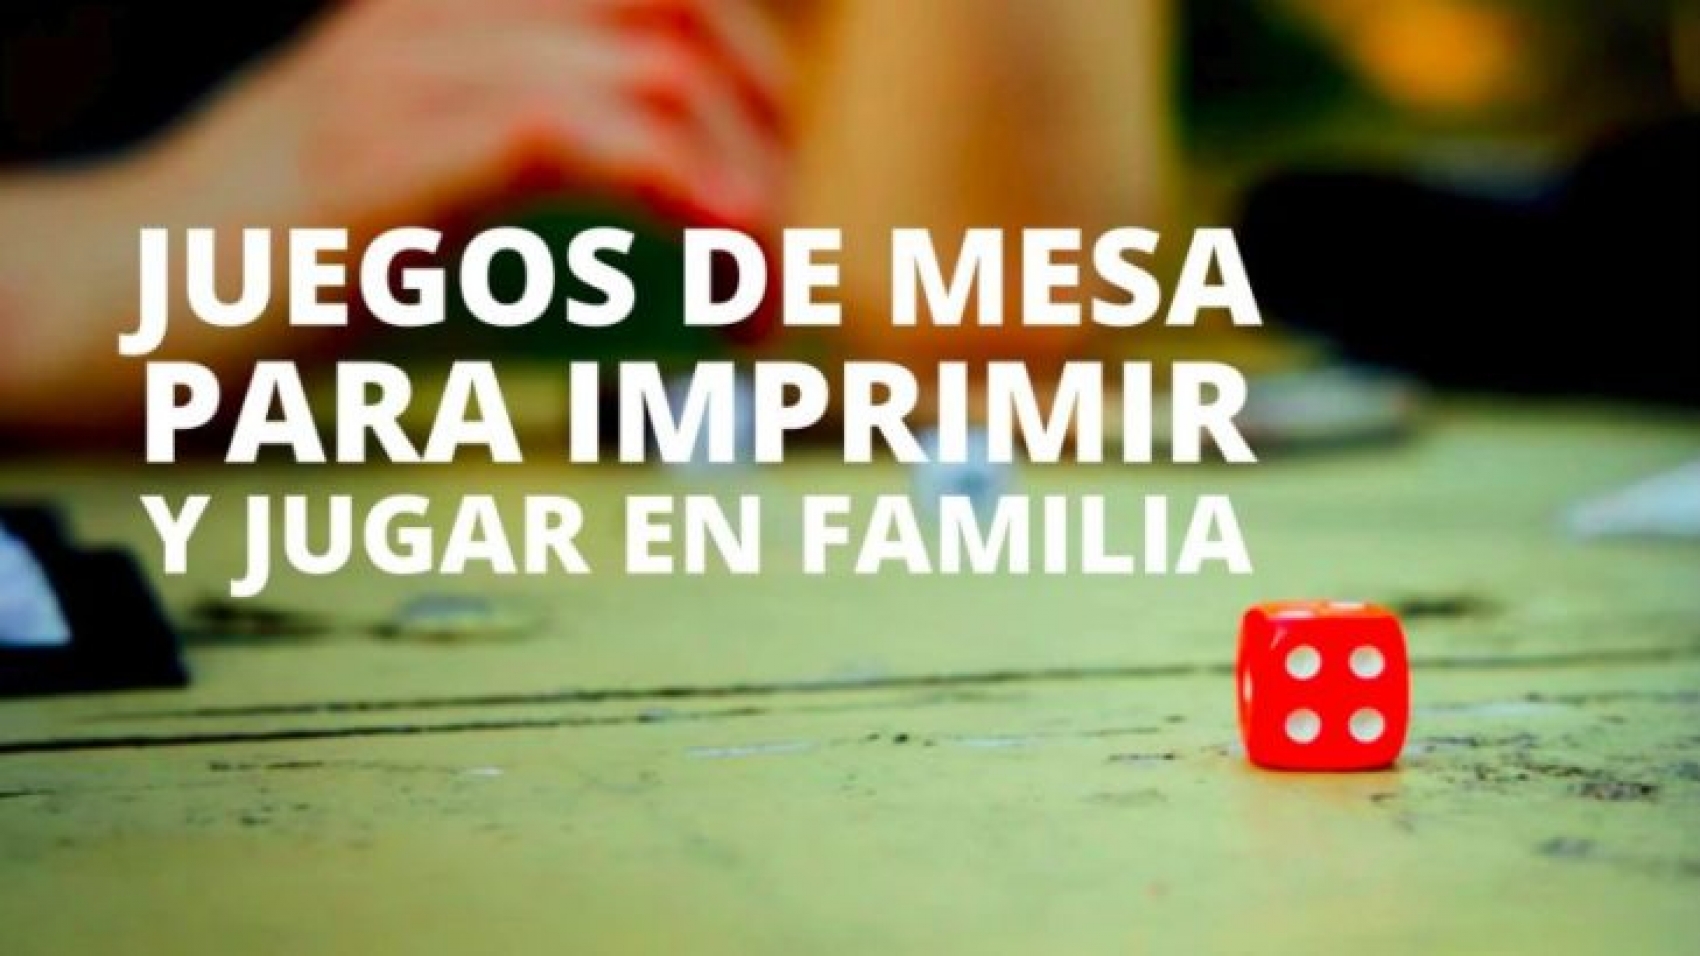 Juegos De Mesa En Español Para La Familia Juego De Bingo Juegos Niños Y Grande 